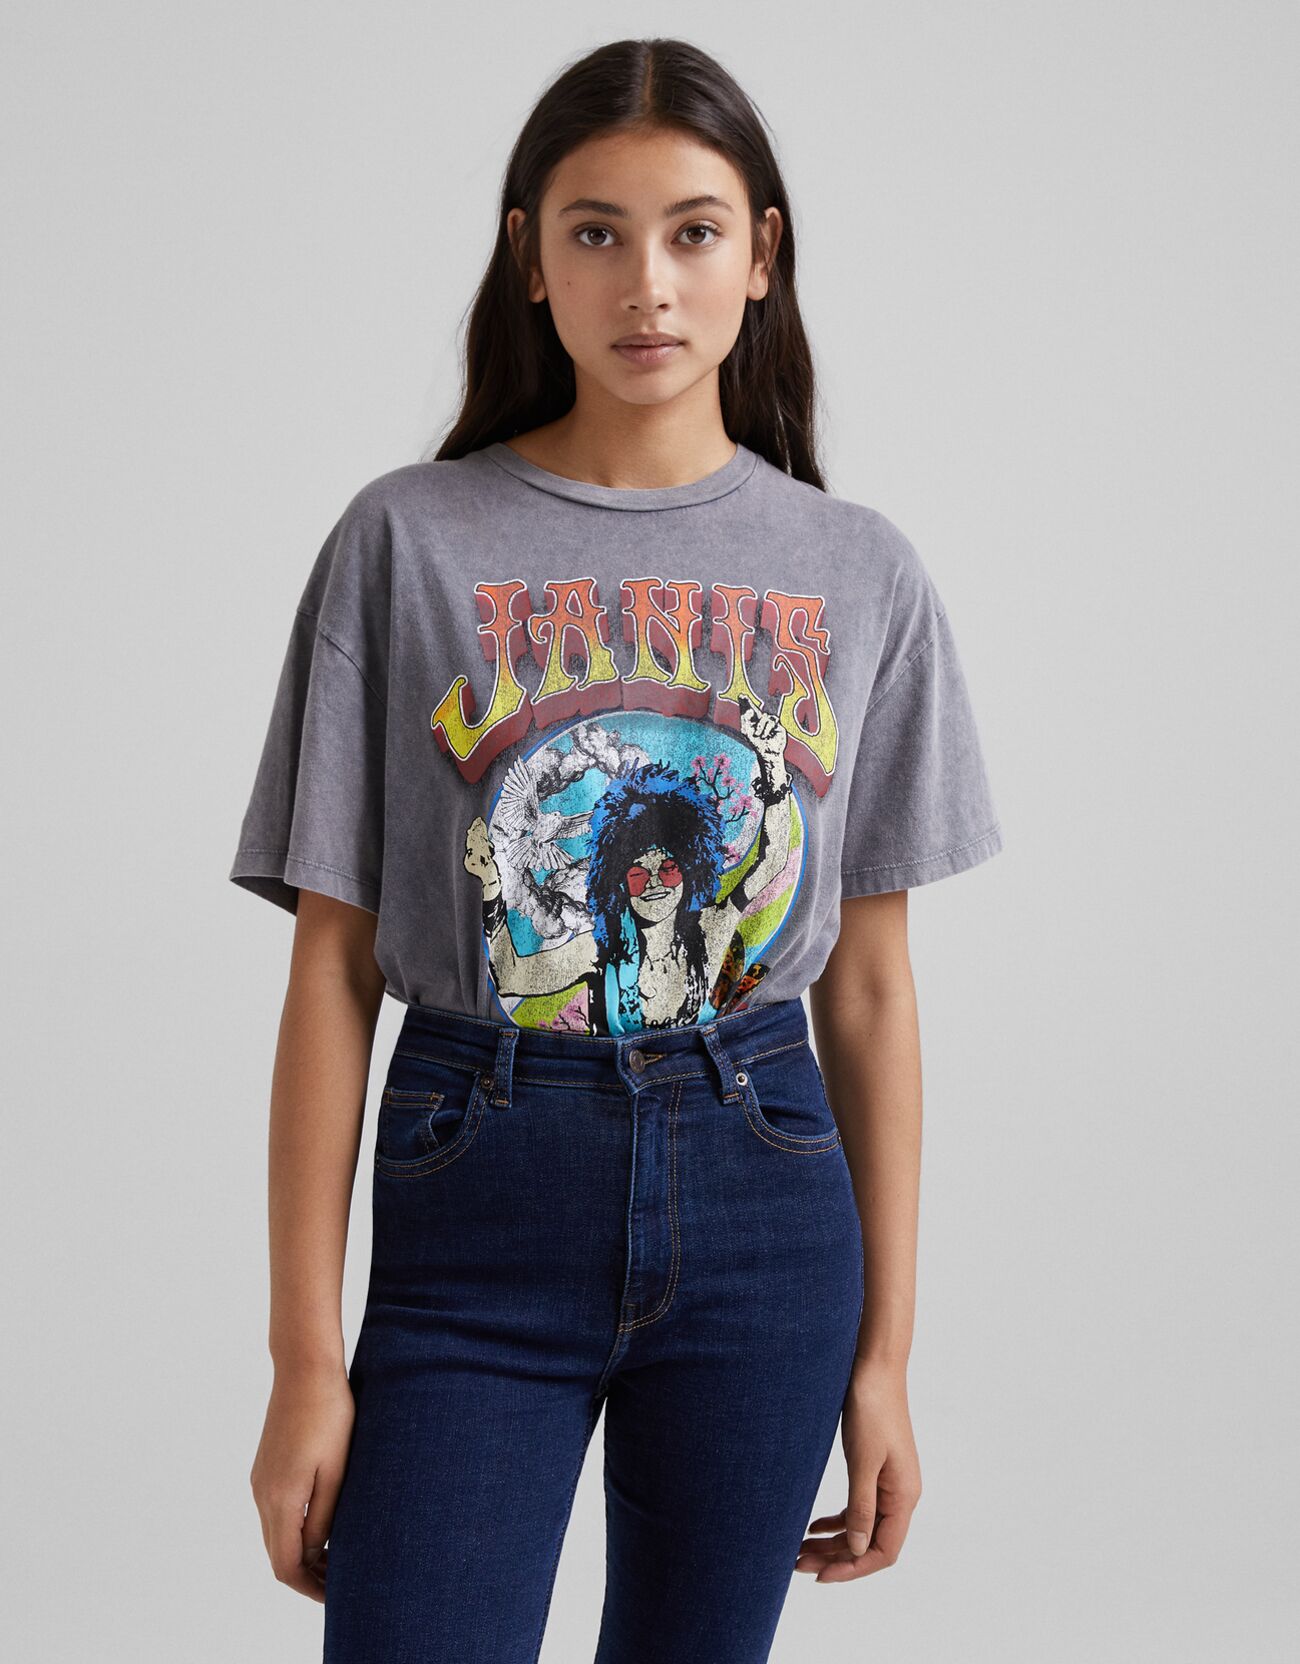 Bershka T-Shirt Manches Courtes Imprimé Janis Joplin Femme L Noir